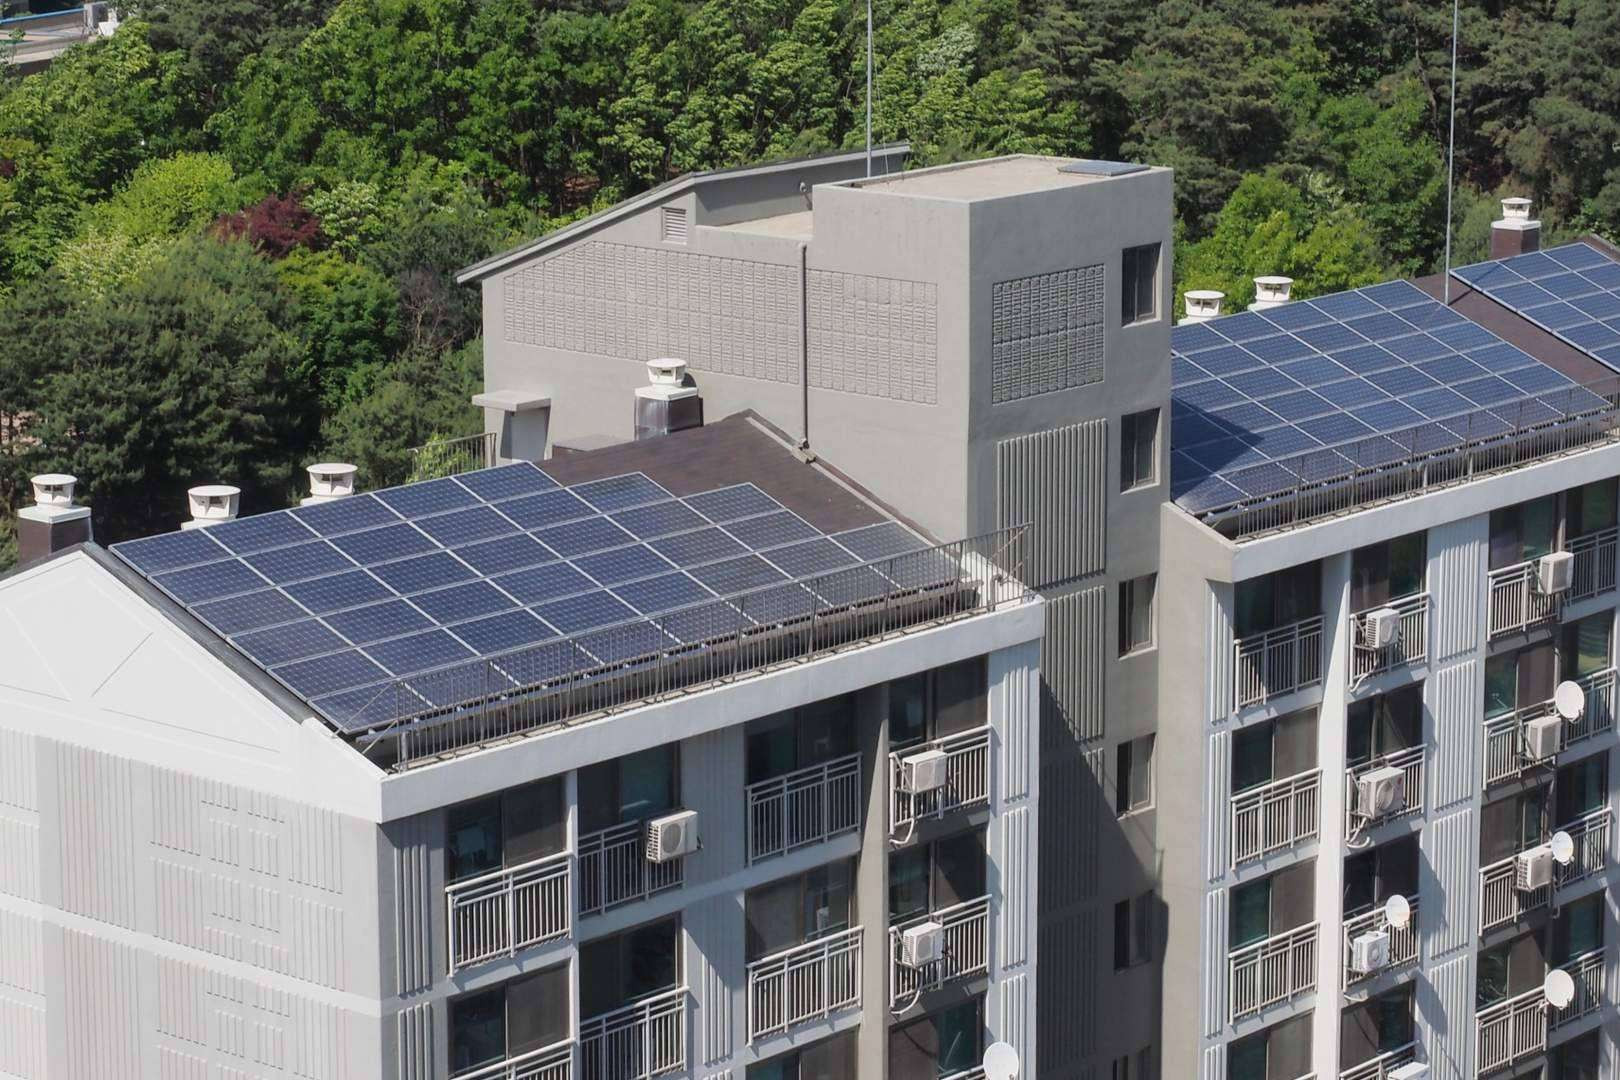  Iberdrola instala su primera comunidad solar en Aragón 